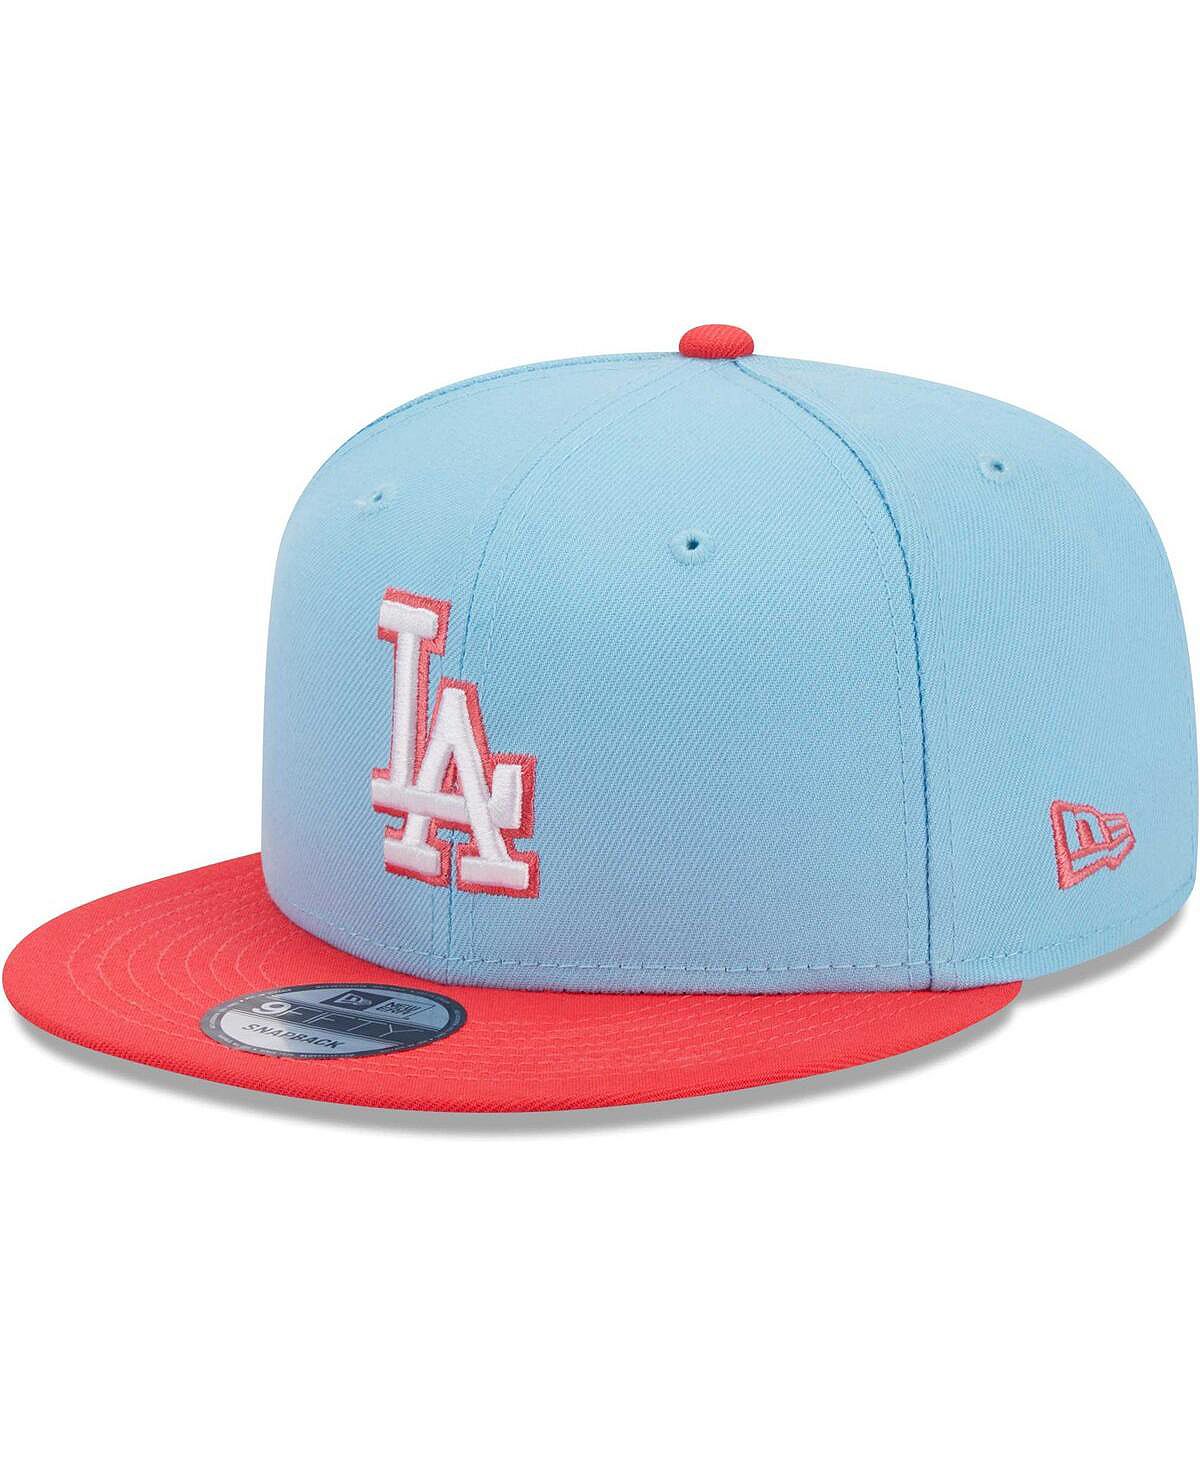 Мужская голубая и красная кепка Los Angeles Dodgers Spring Basic двухцветная кепка Snapback 9FIFTY New Era